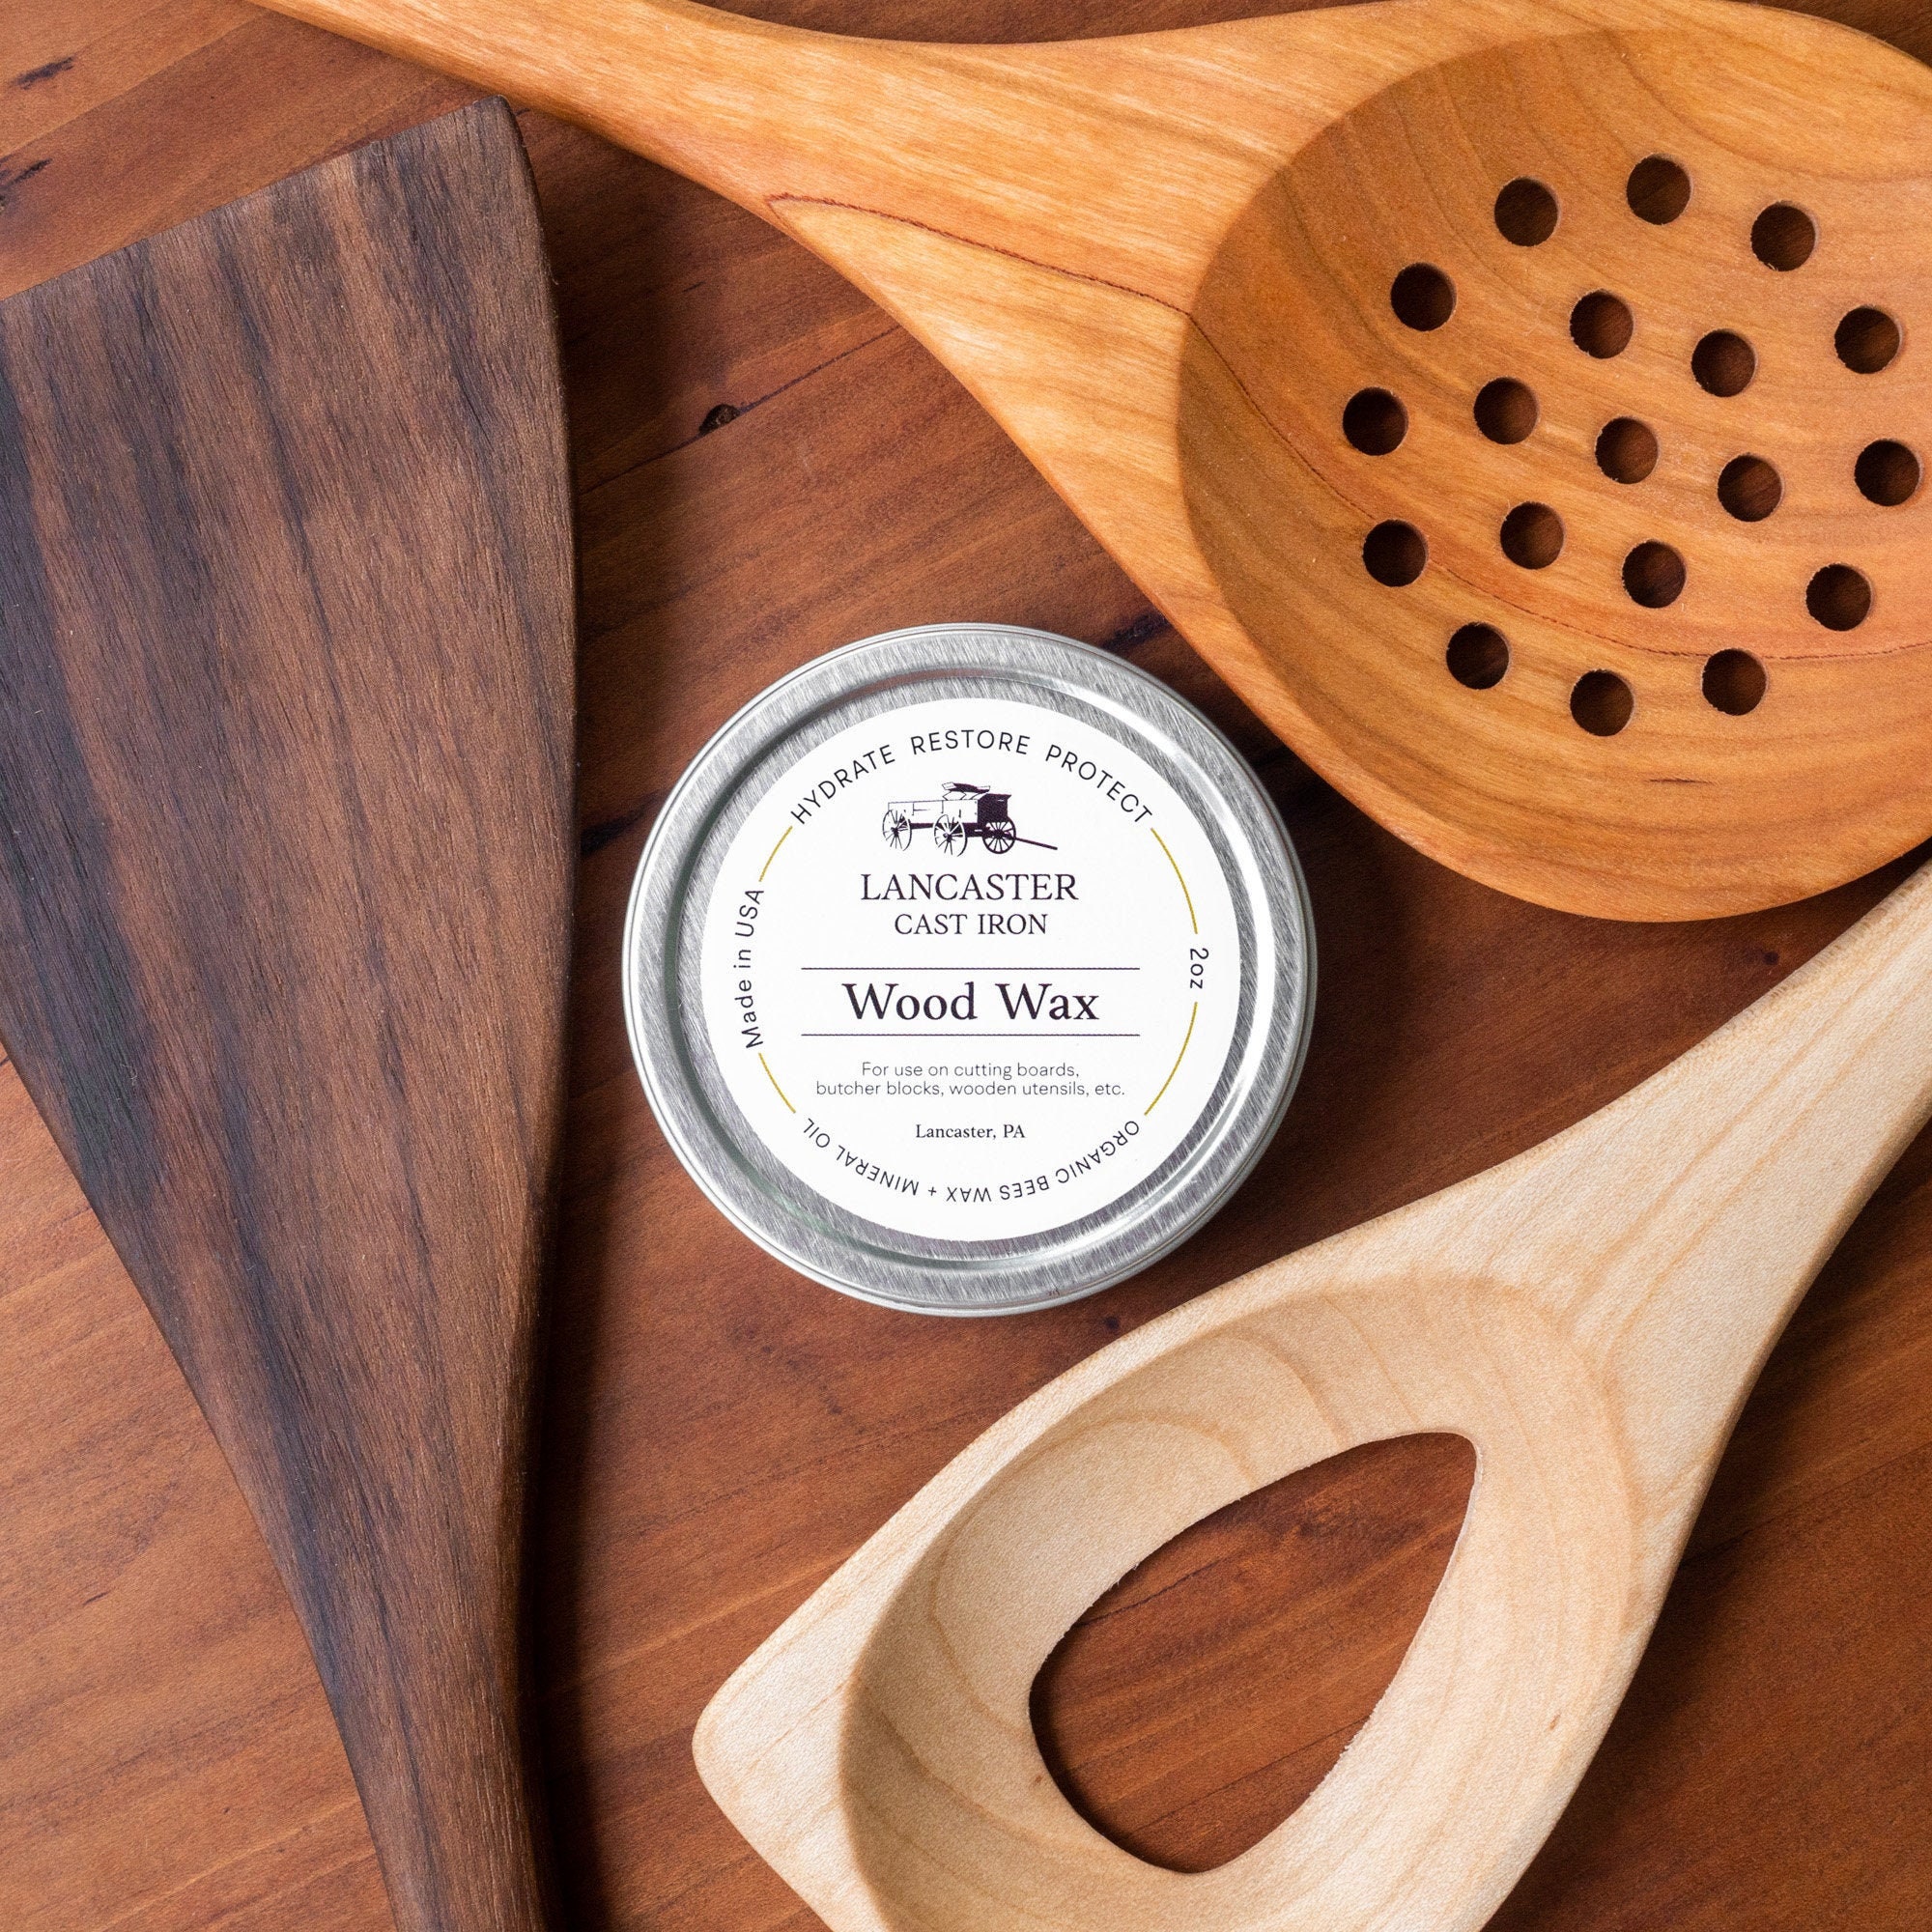 Wooden Kitchen Utensils Set - Wood Cooking Spoons - Wooden Utensils -  Avocrafts